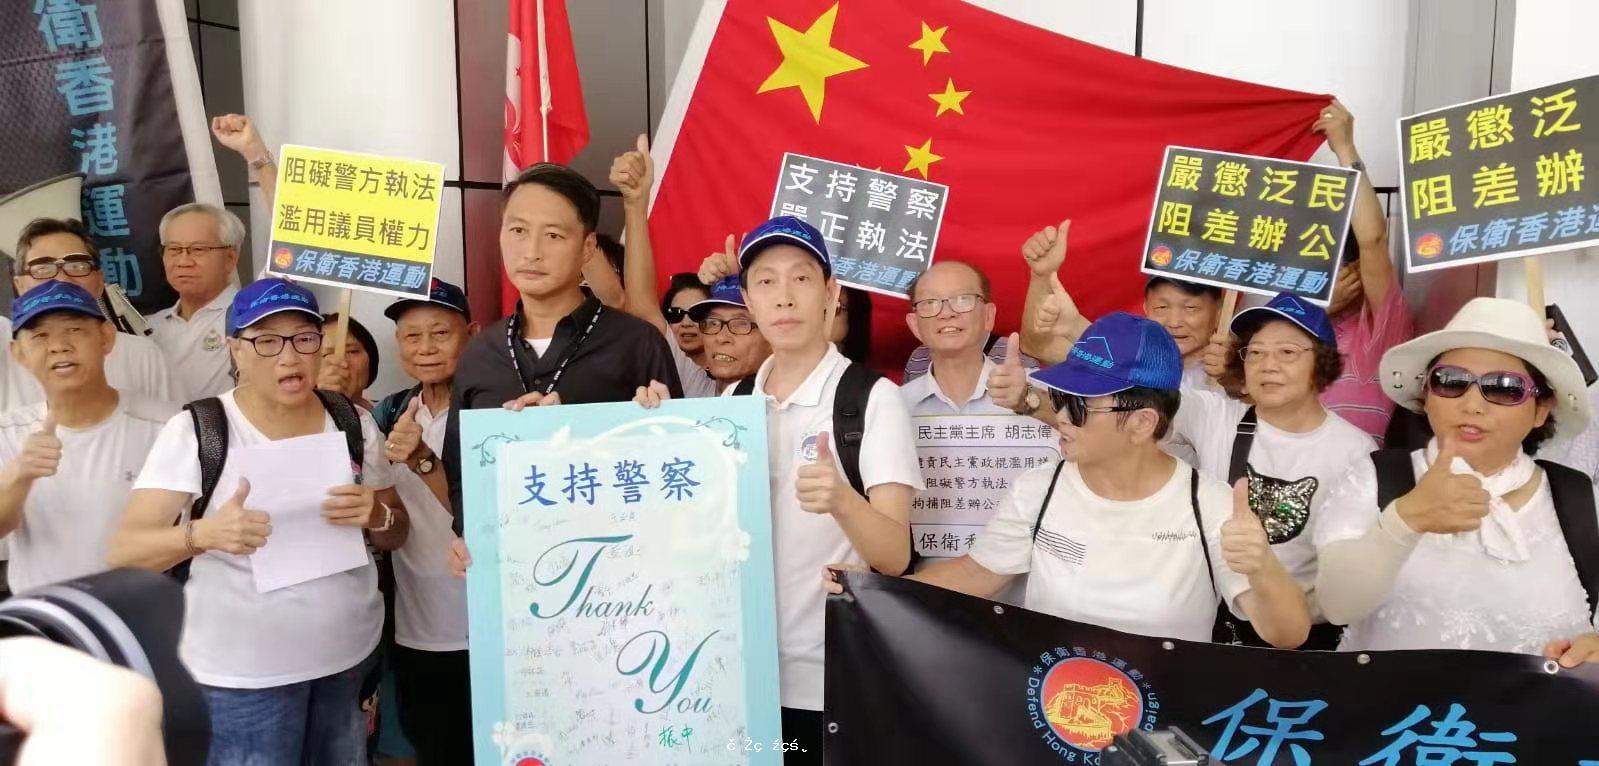 保衛香港運動 主辦「嚴懲泛民阻差辦公」遊行集會